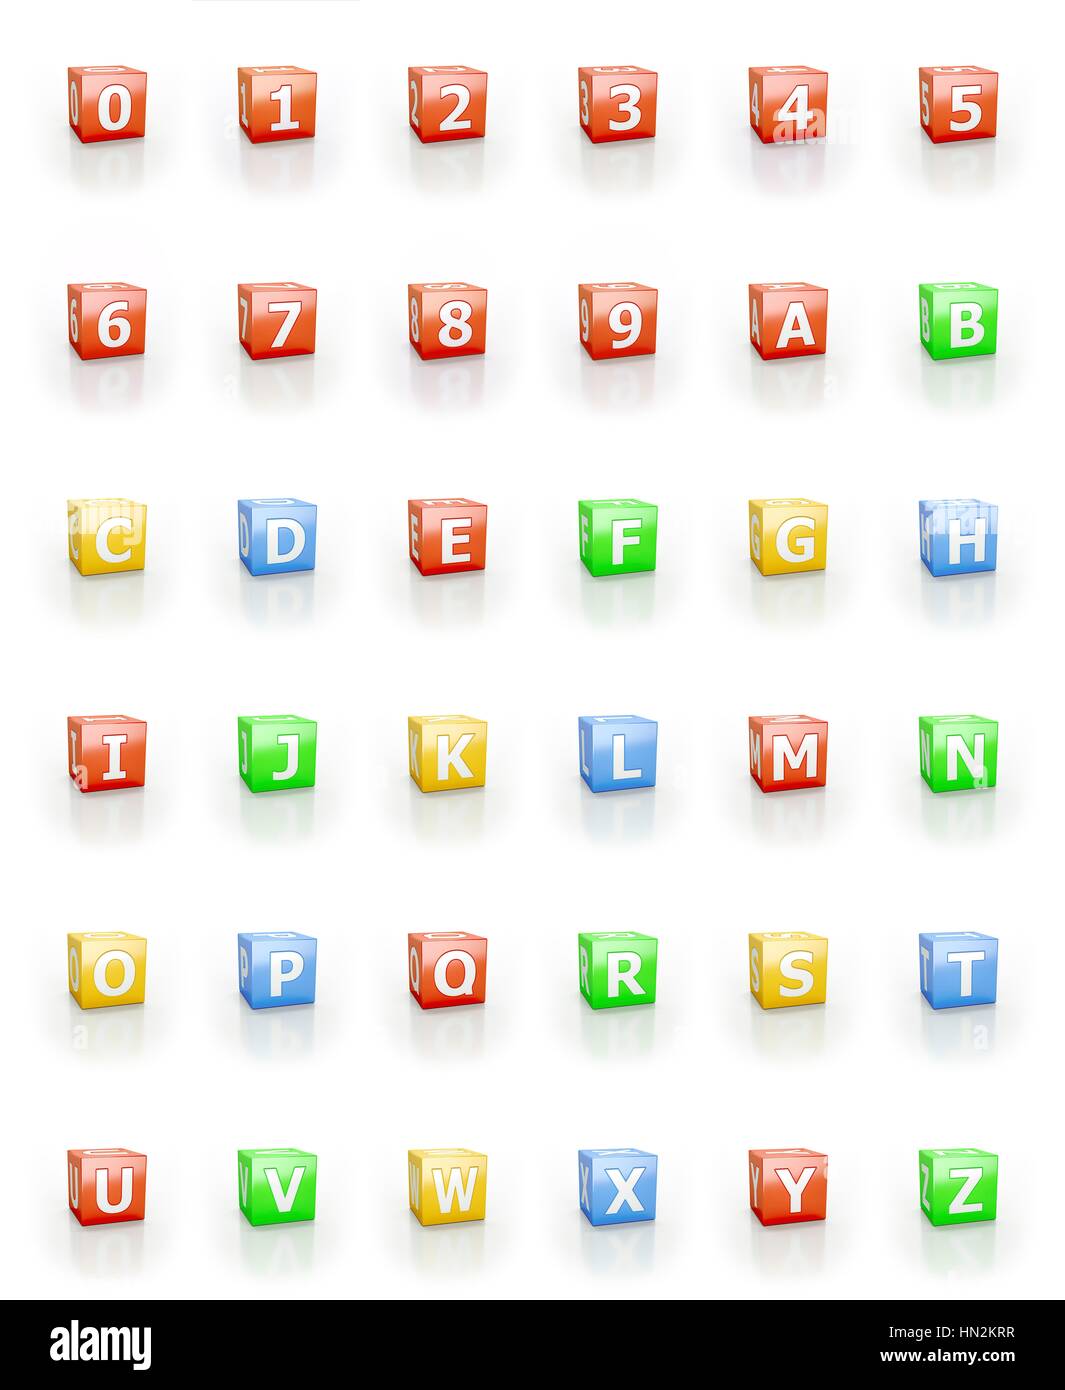 Zahlen 1-0, Buchstaben A - Z auf kubischen Blöcken. Stockfoto